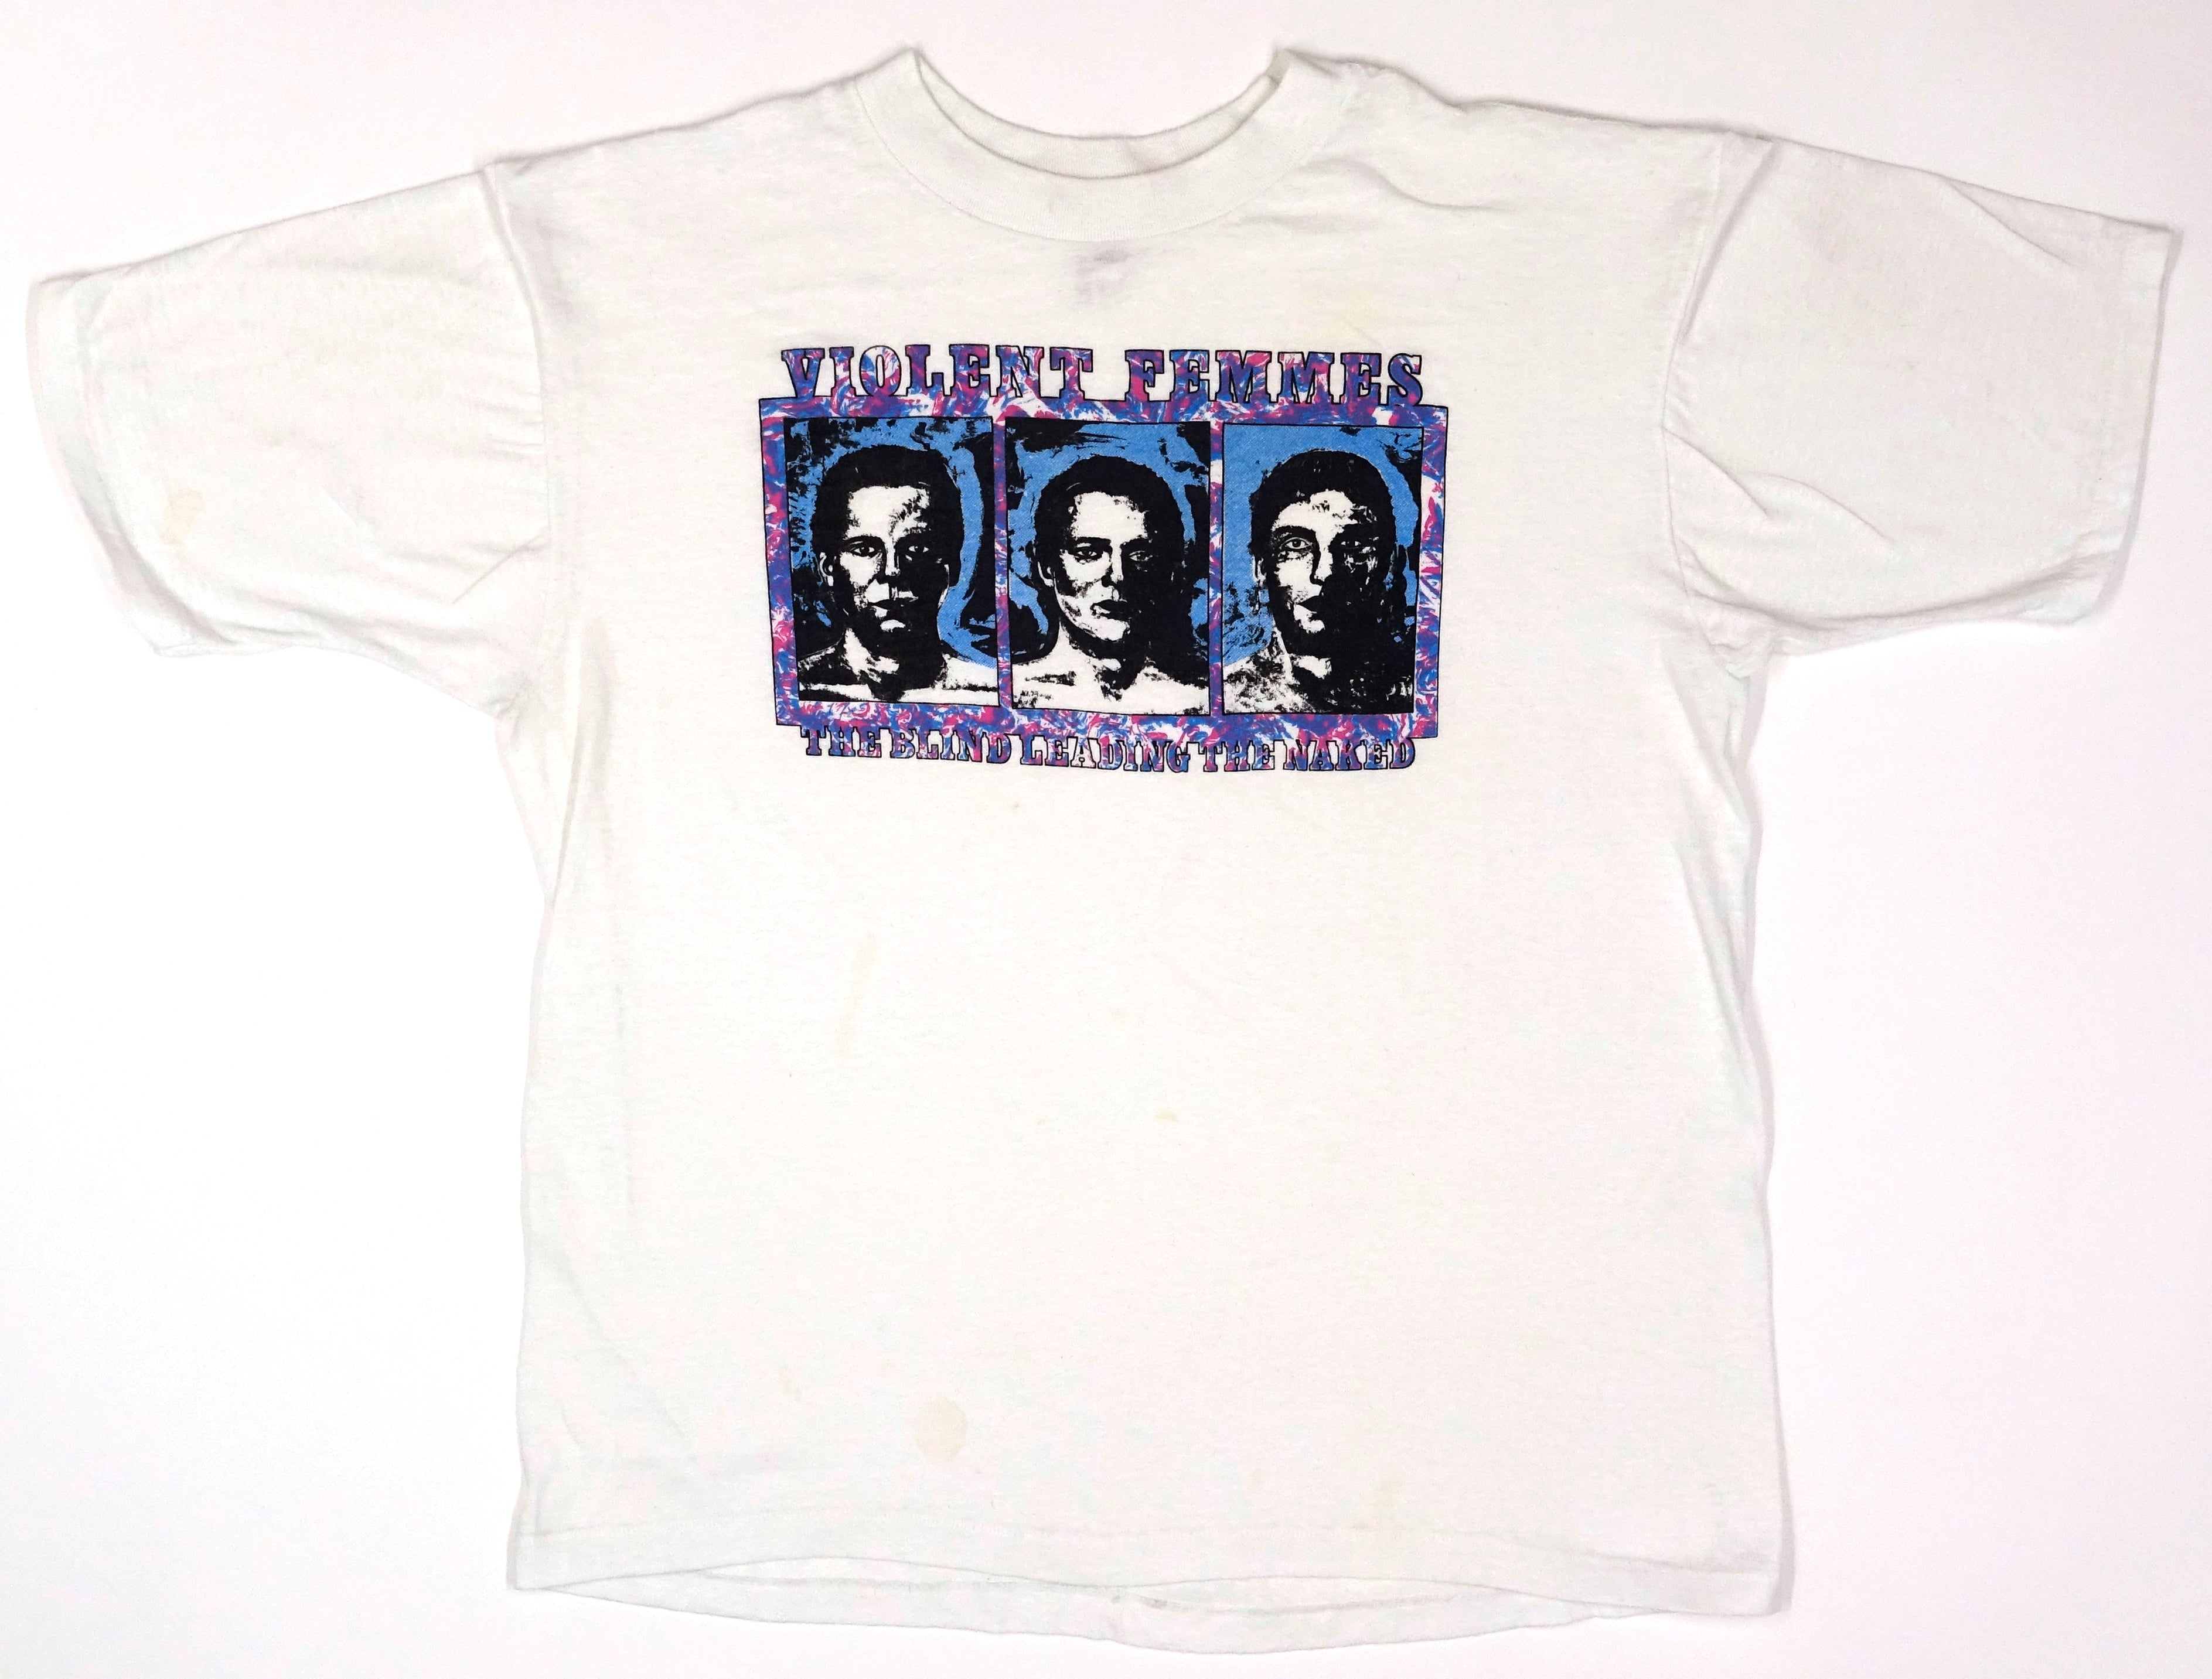 Violent Femmes - Blind Leading The Naked 1986 Tour Shirt Size XL